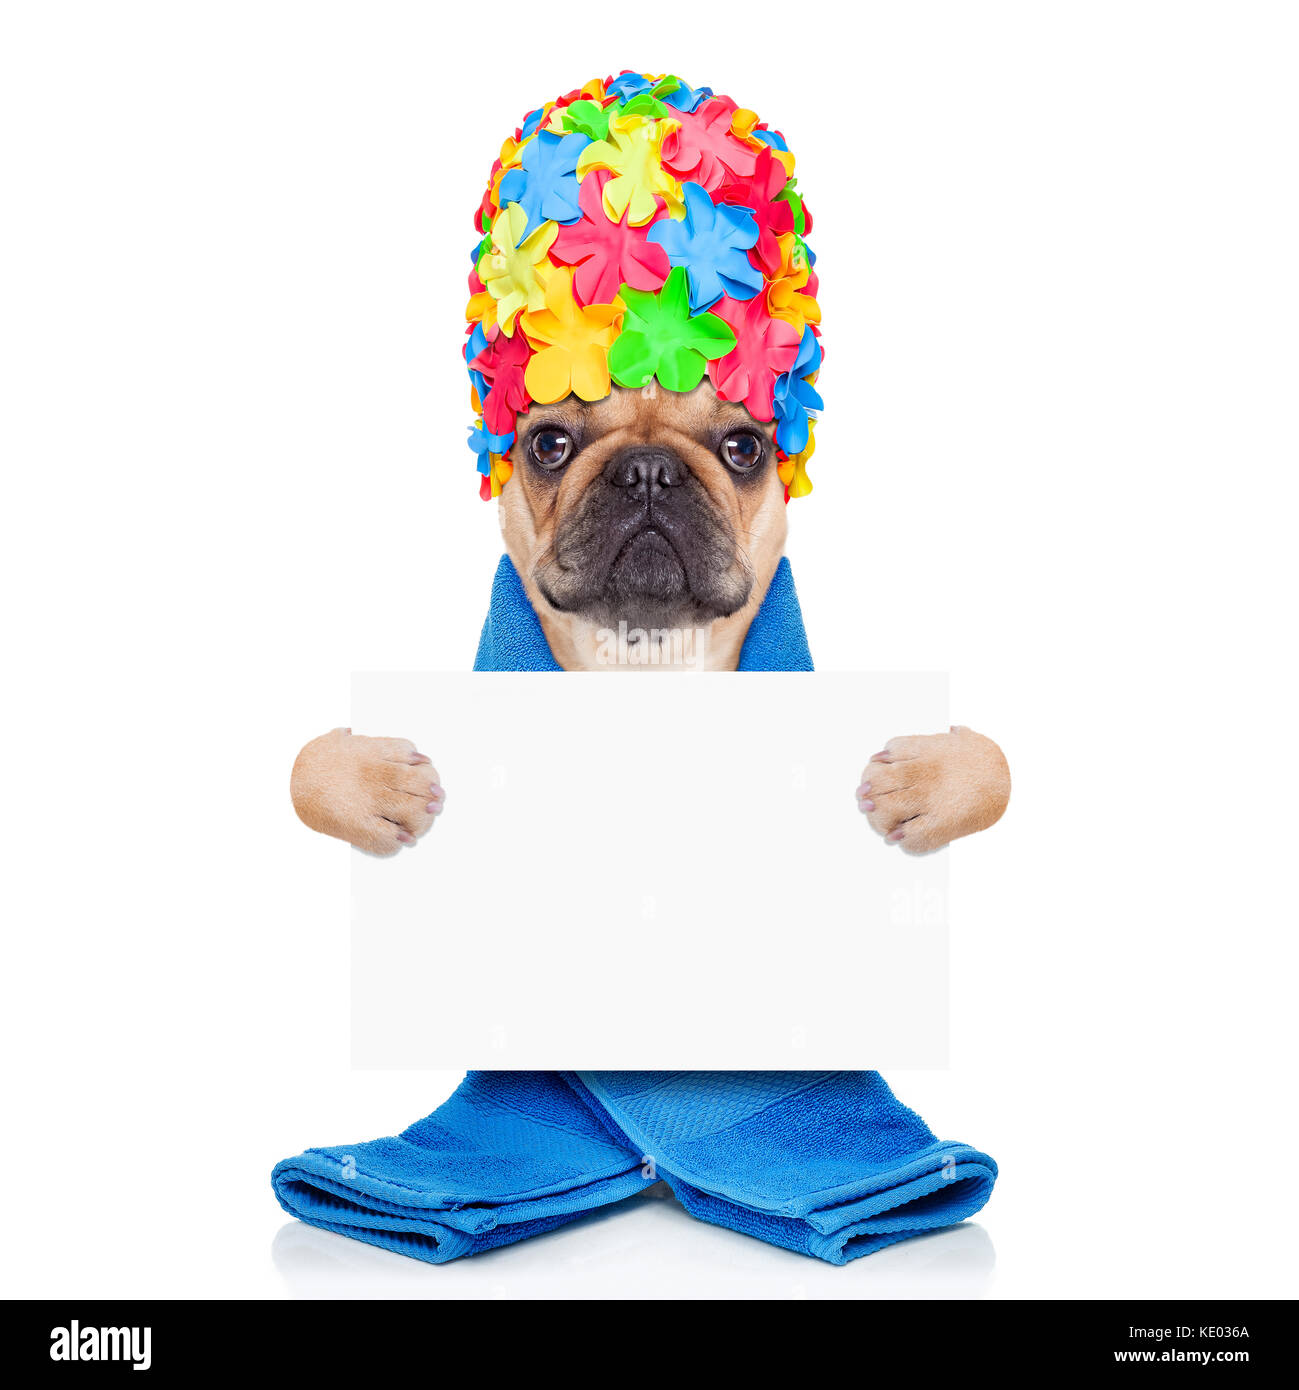 Französische Bulldogge Hund bereit, eine Badewanne oder eine Dusche das  Tragen einer Badekappe und Handtuch, Holding ein weißes Plakat oder Banner  auf weißem Hintergrund zu haben Stockfotografie - Alamy